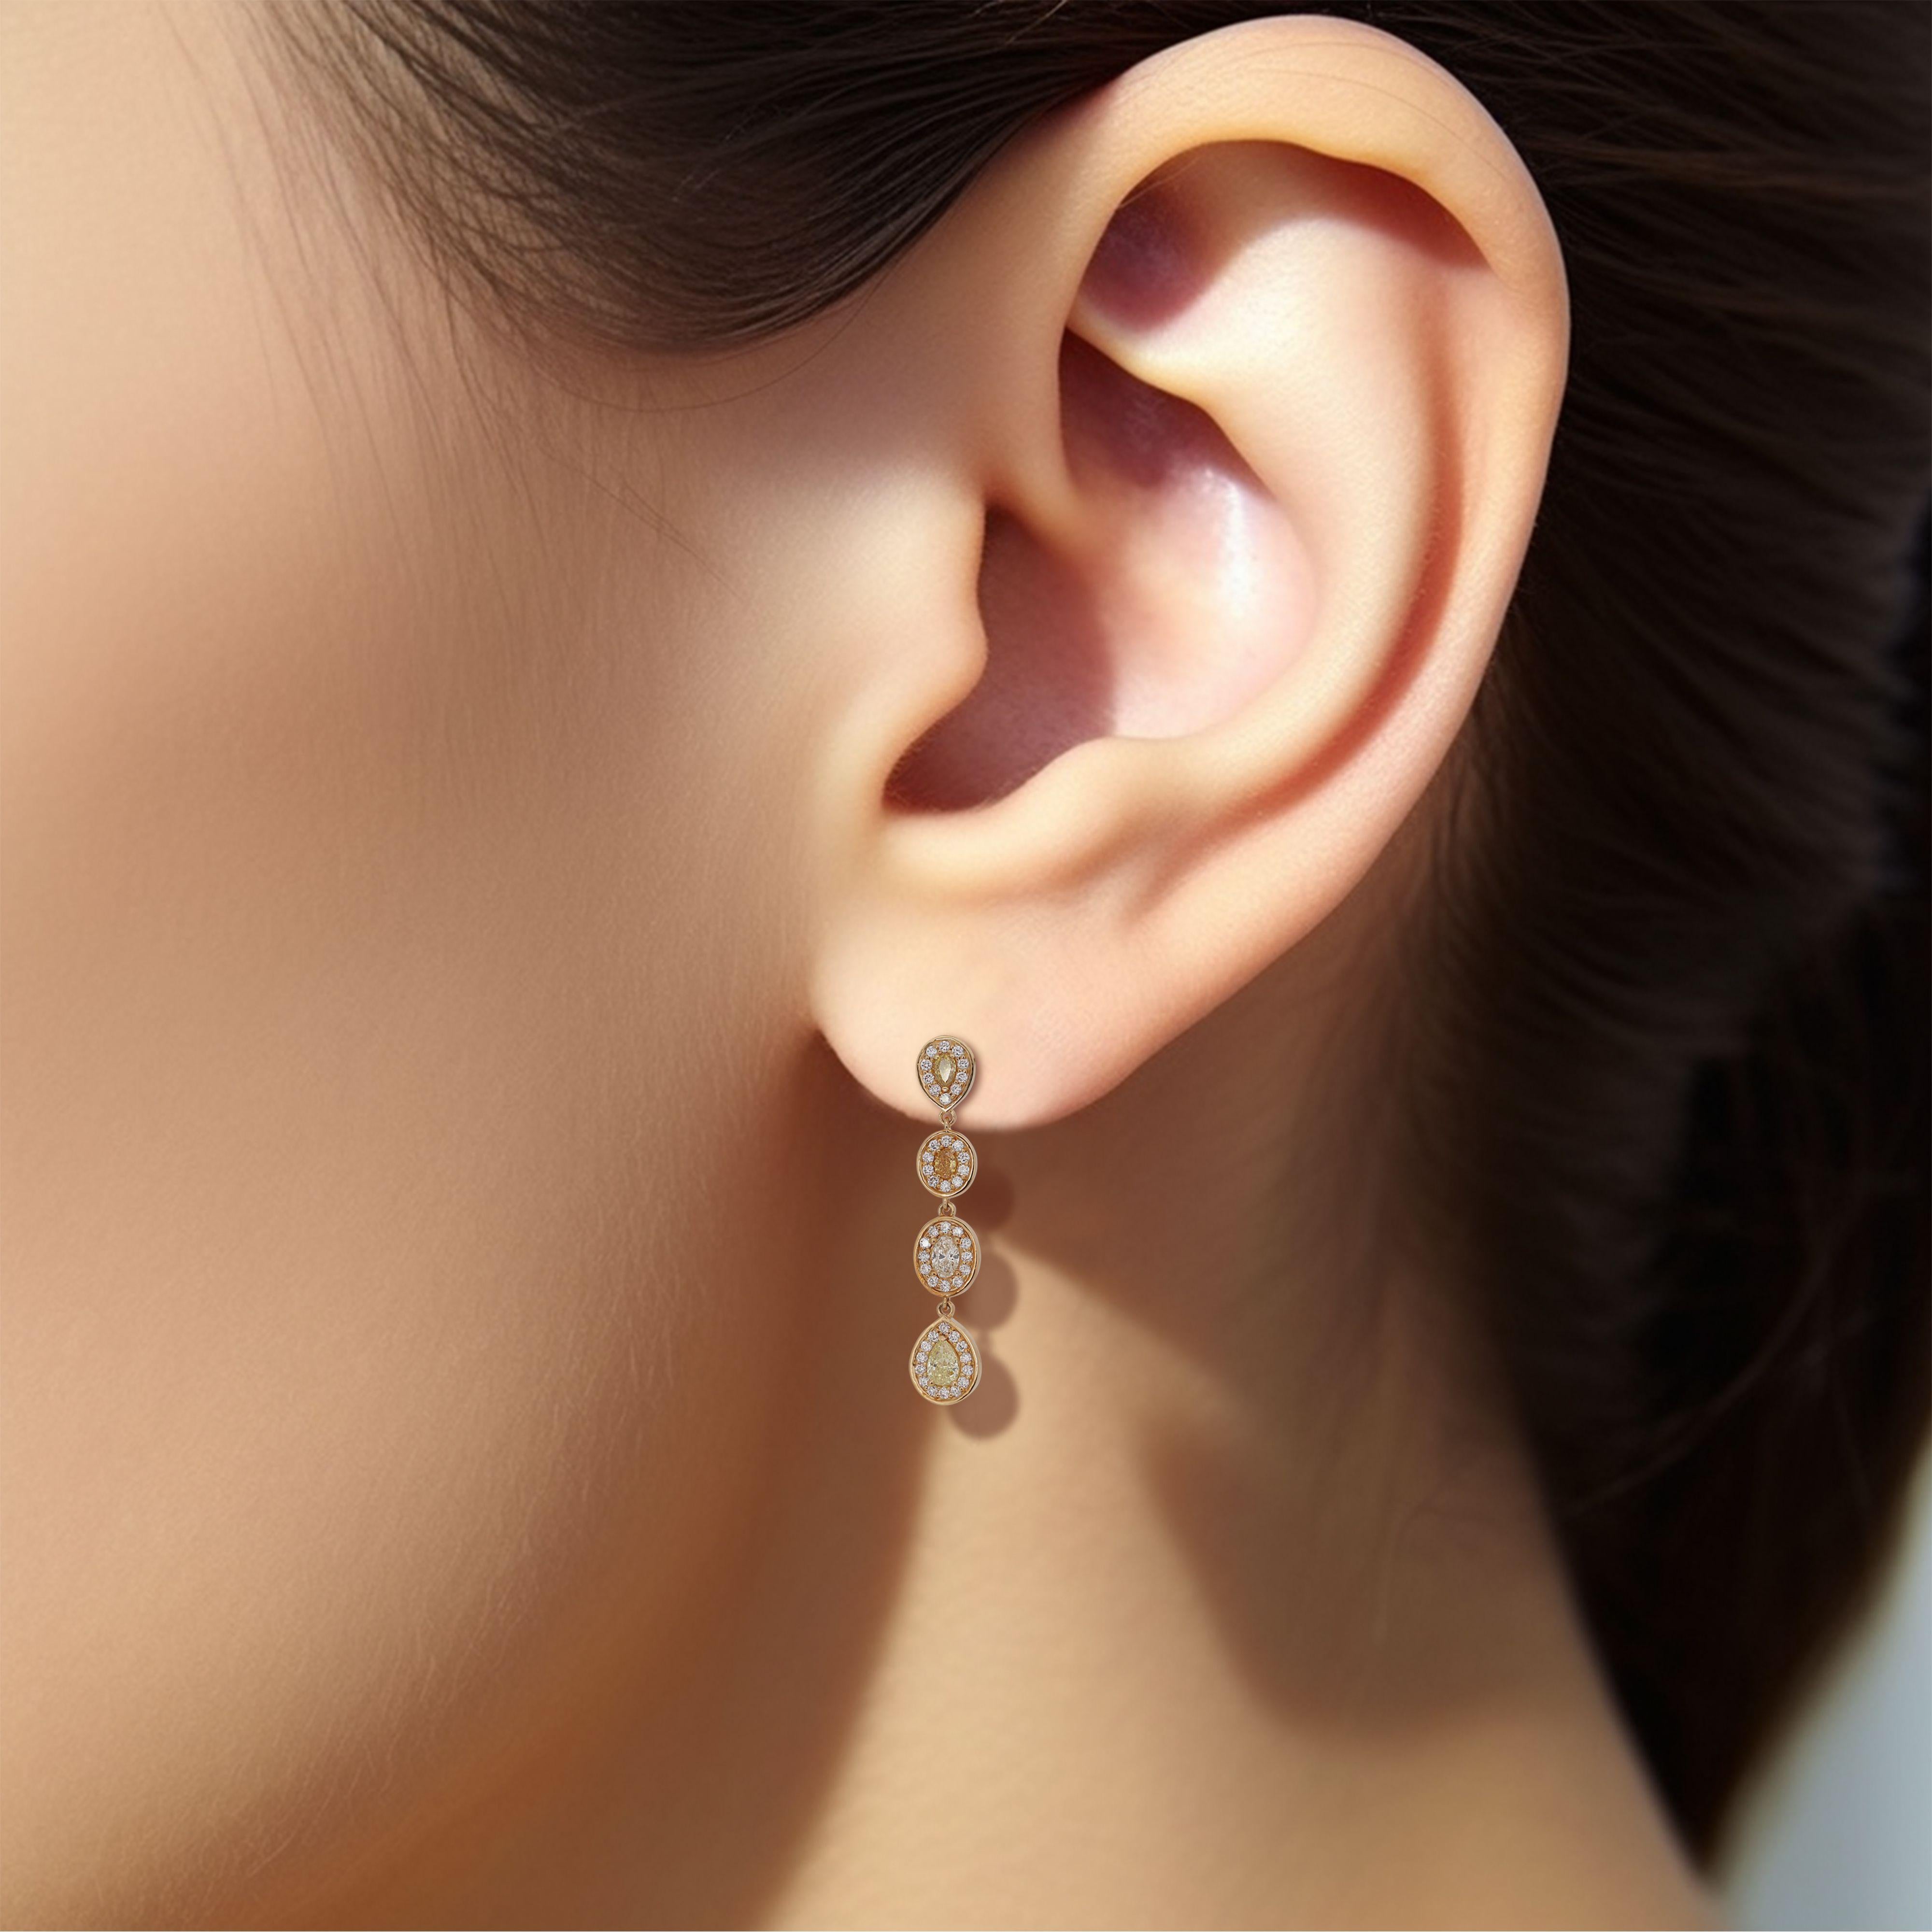 Ein luxuriöser natürlicher Tropfen Stil Ohrringe mit 8 natürlichen fancy mix gelb orange braun natürliche Diamanten mit insgesamt 1,82 Karat als die wichtigsten Steine. Diese Ohrringe sind mit runden Brillanten im Idealschliff in F VS umgeben, die